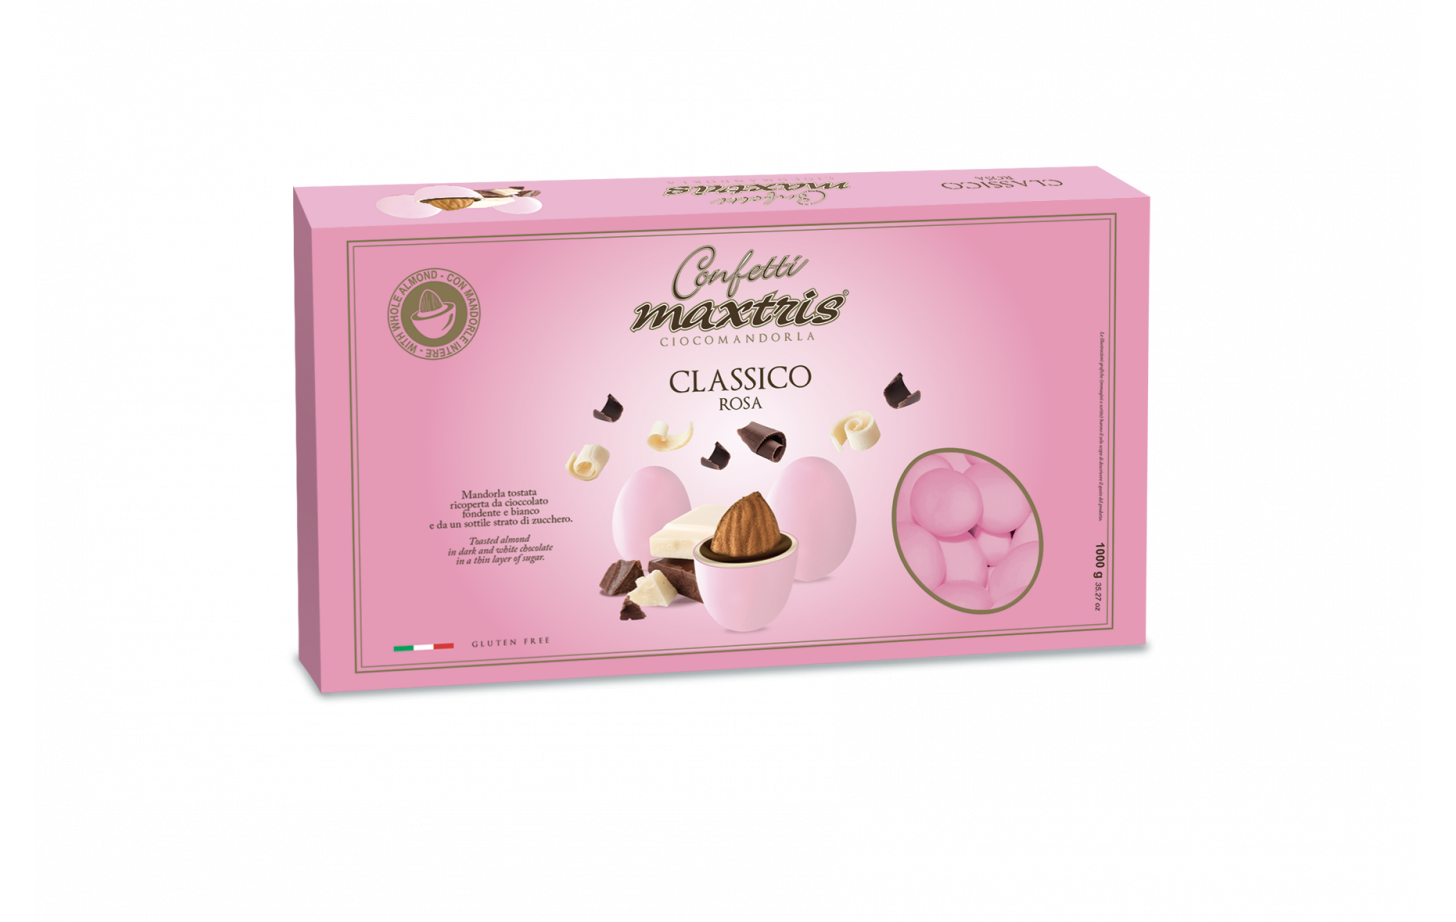 Confetti Maxtris cioccomandorla classici rosa 1 kg